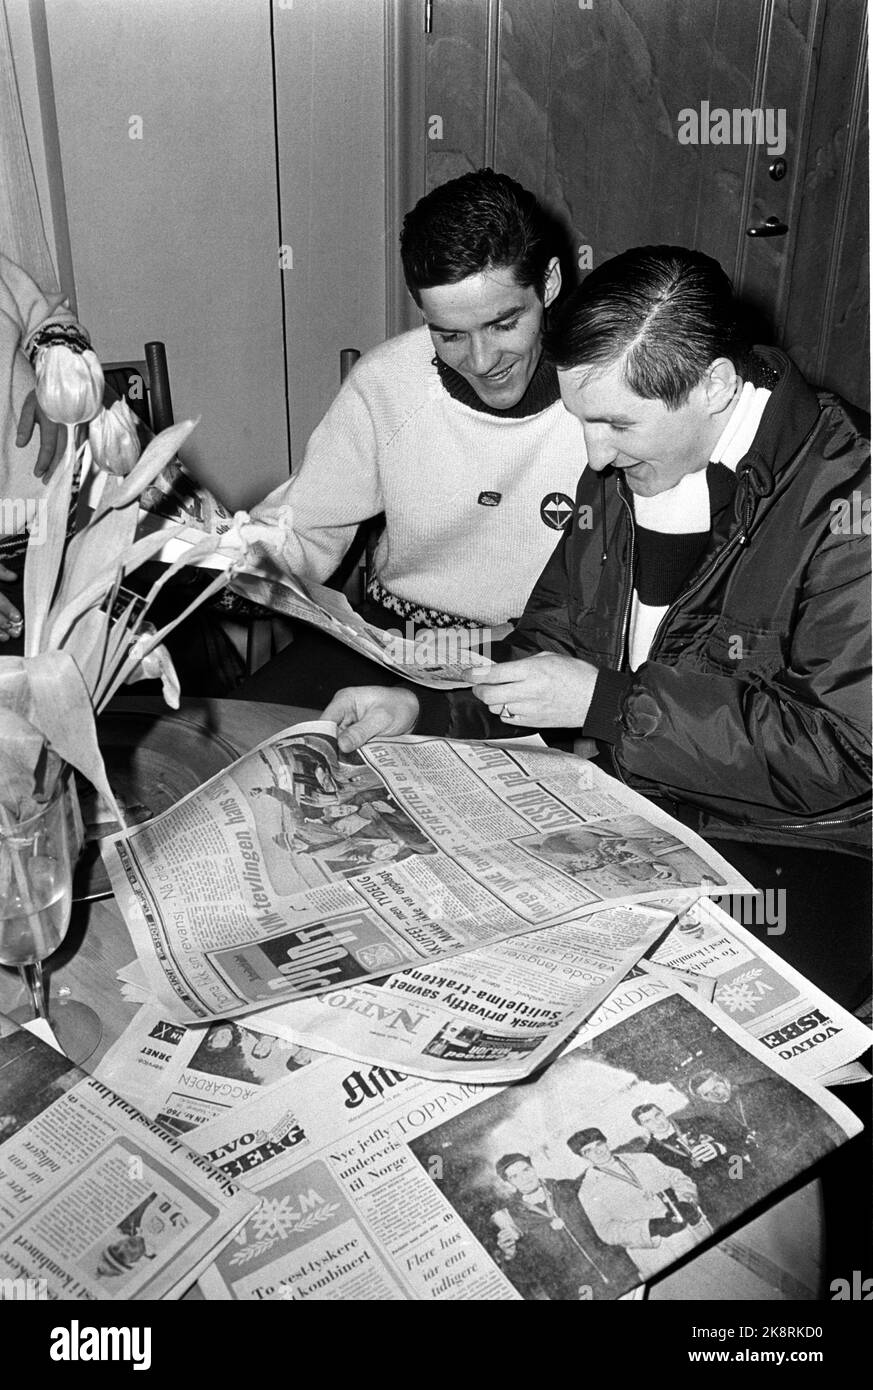 Oslo 19660223 WM in Holmenkollen. Zwei norwegische Goldgewinnerinnen, Gjermund Eggen (TV) und Bjørn Wirkola, studieren die Zeitungen, nachdem sie ihre ersten Goldmedaillen gewonnen haben. Eggen erhielt insgesamt drei Goldmedaillen in der Meisterschaft, Wirkola erhielt zwei von zwei möglichen. Foto: NTB / NTB Stockfoto